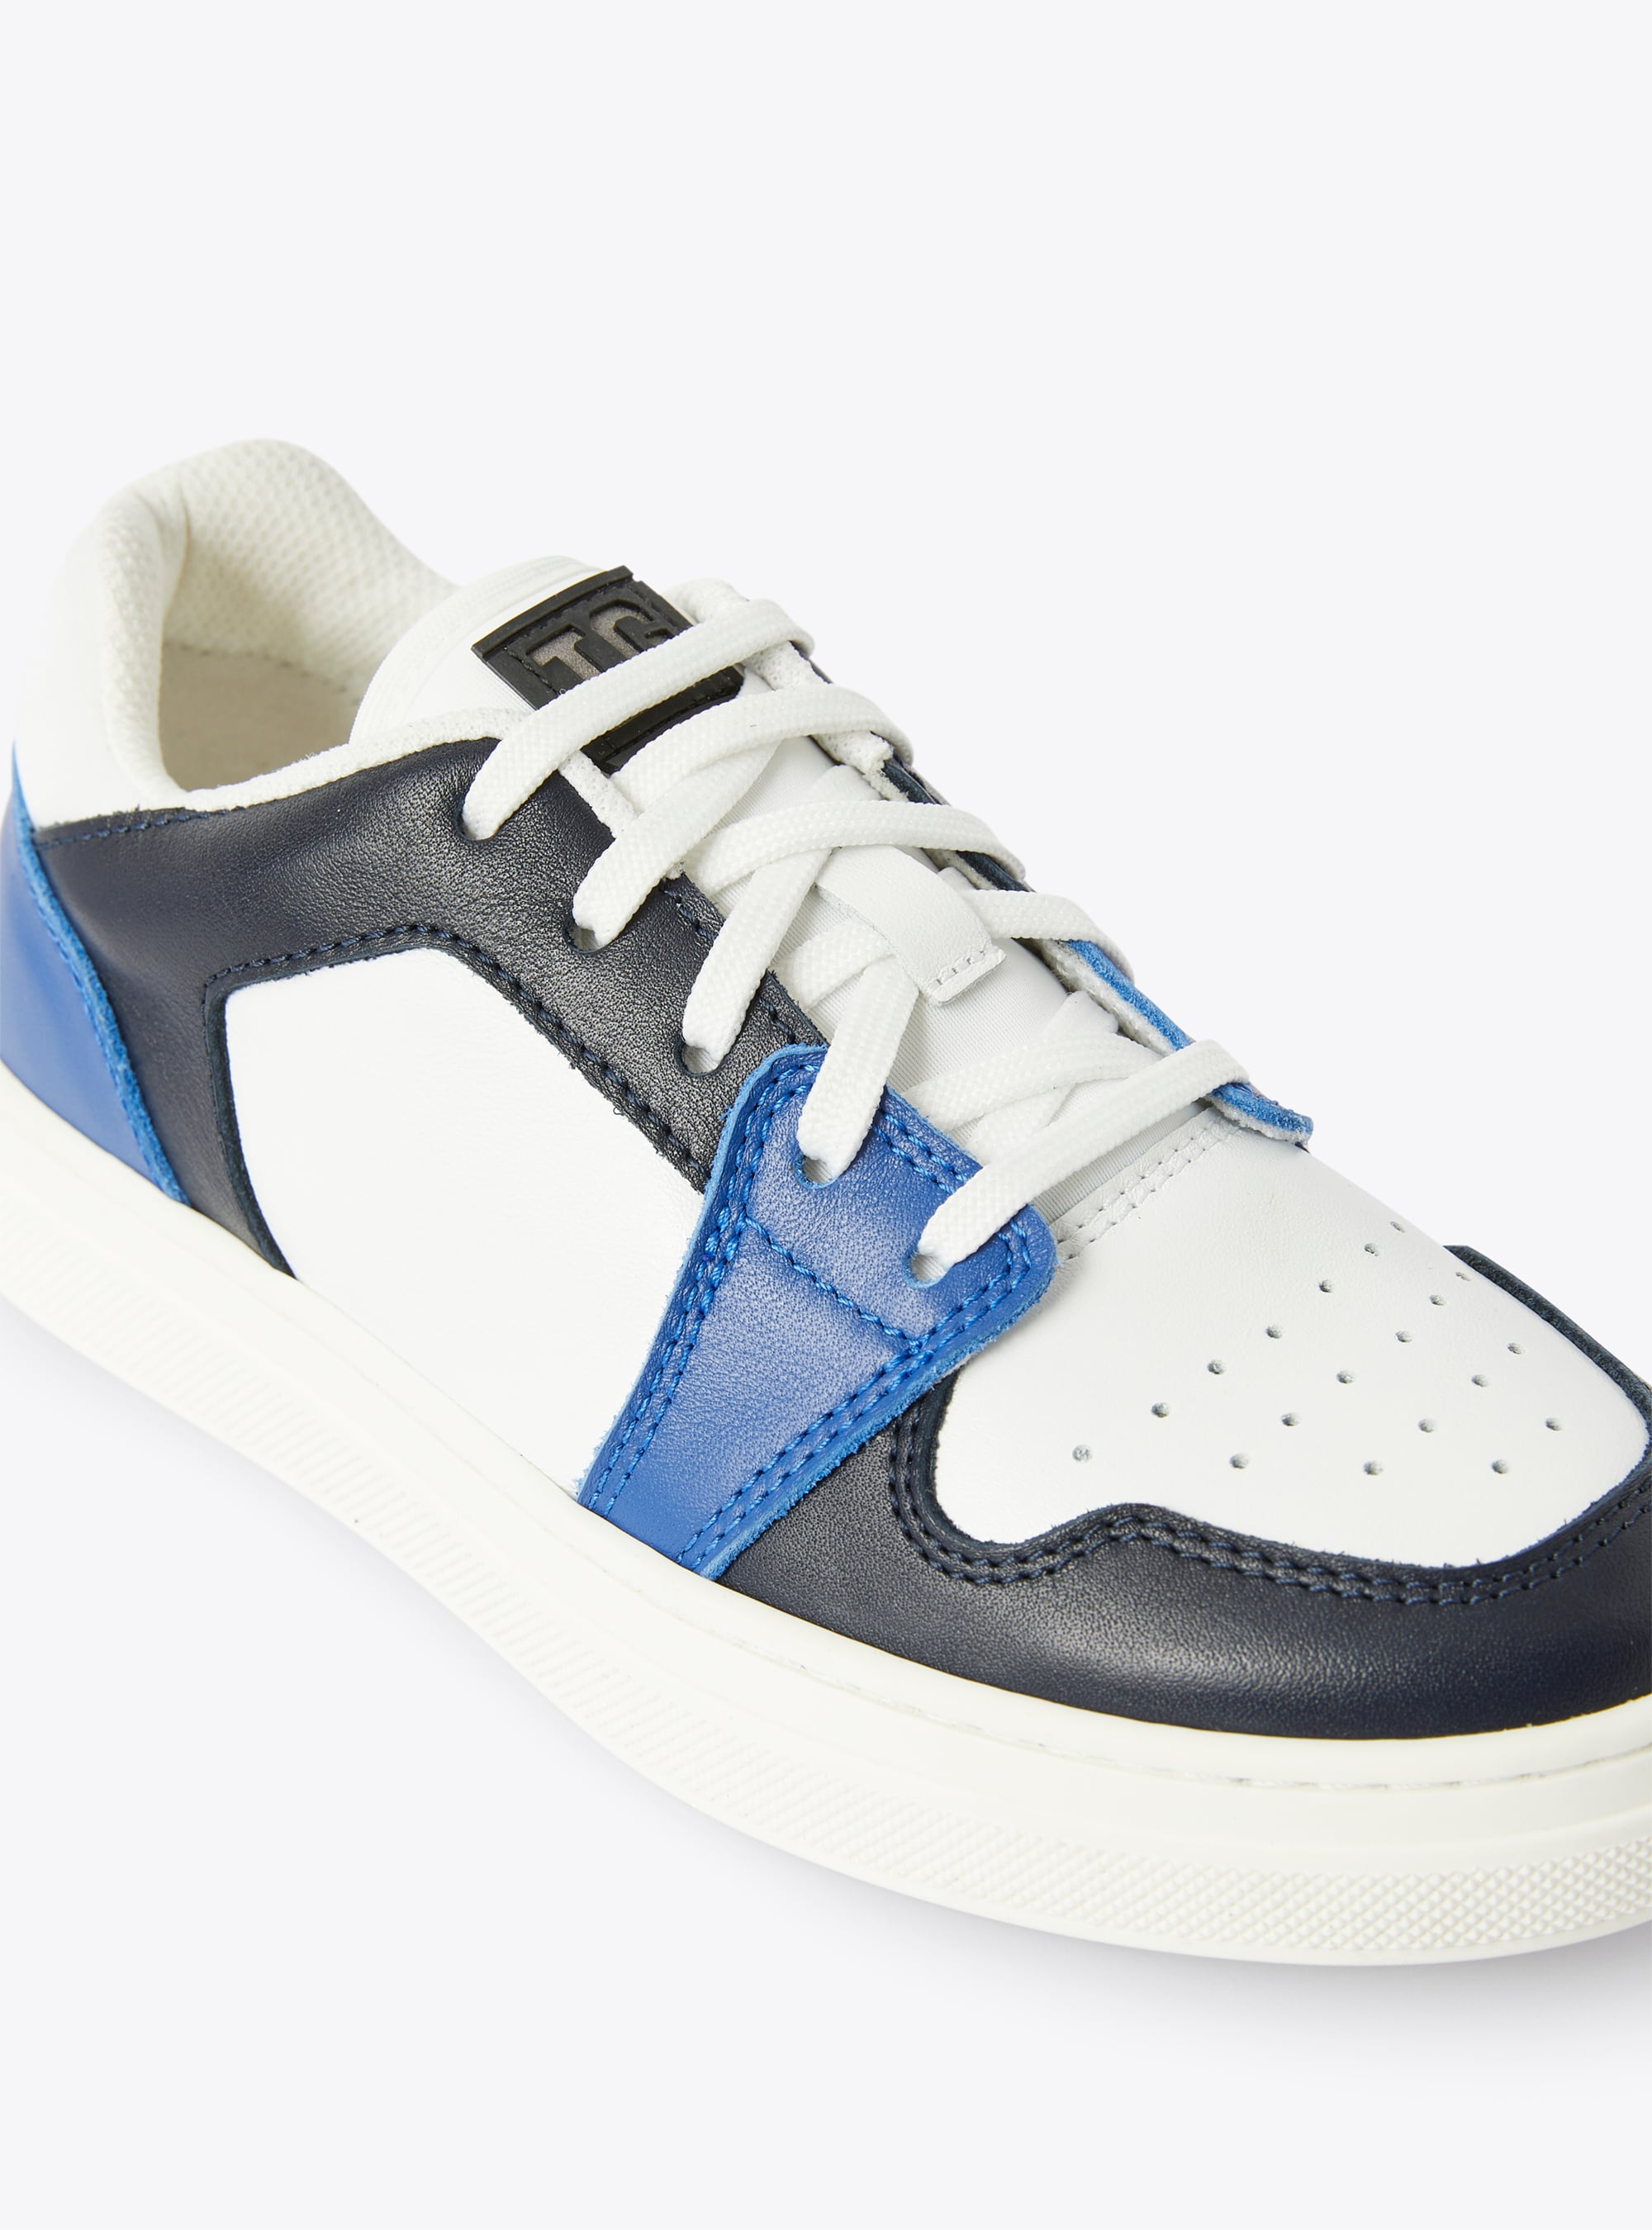 Sneakers basses IG bicolores cobalt et bleu - Bleu | Il Gufo